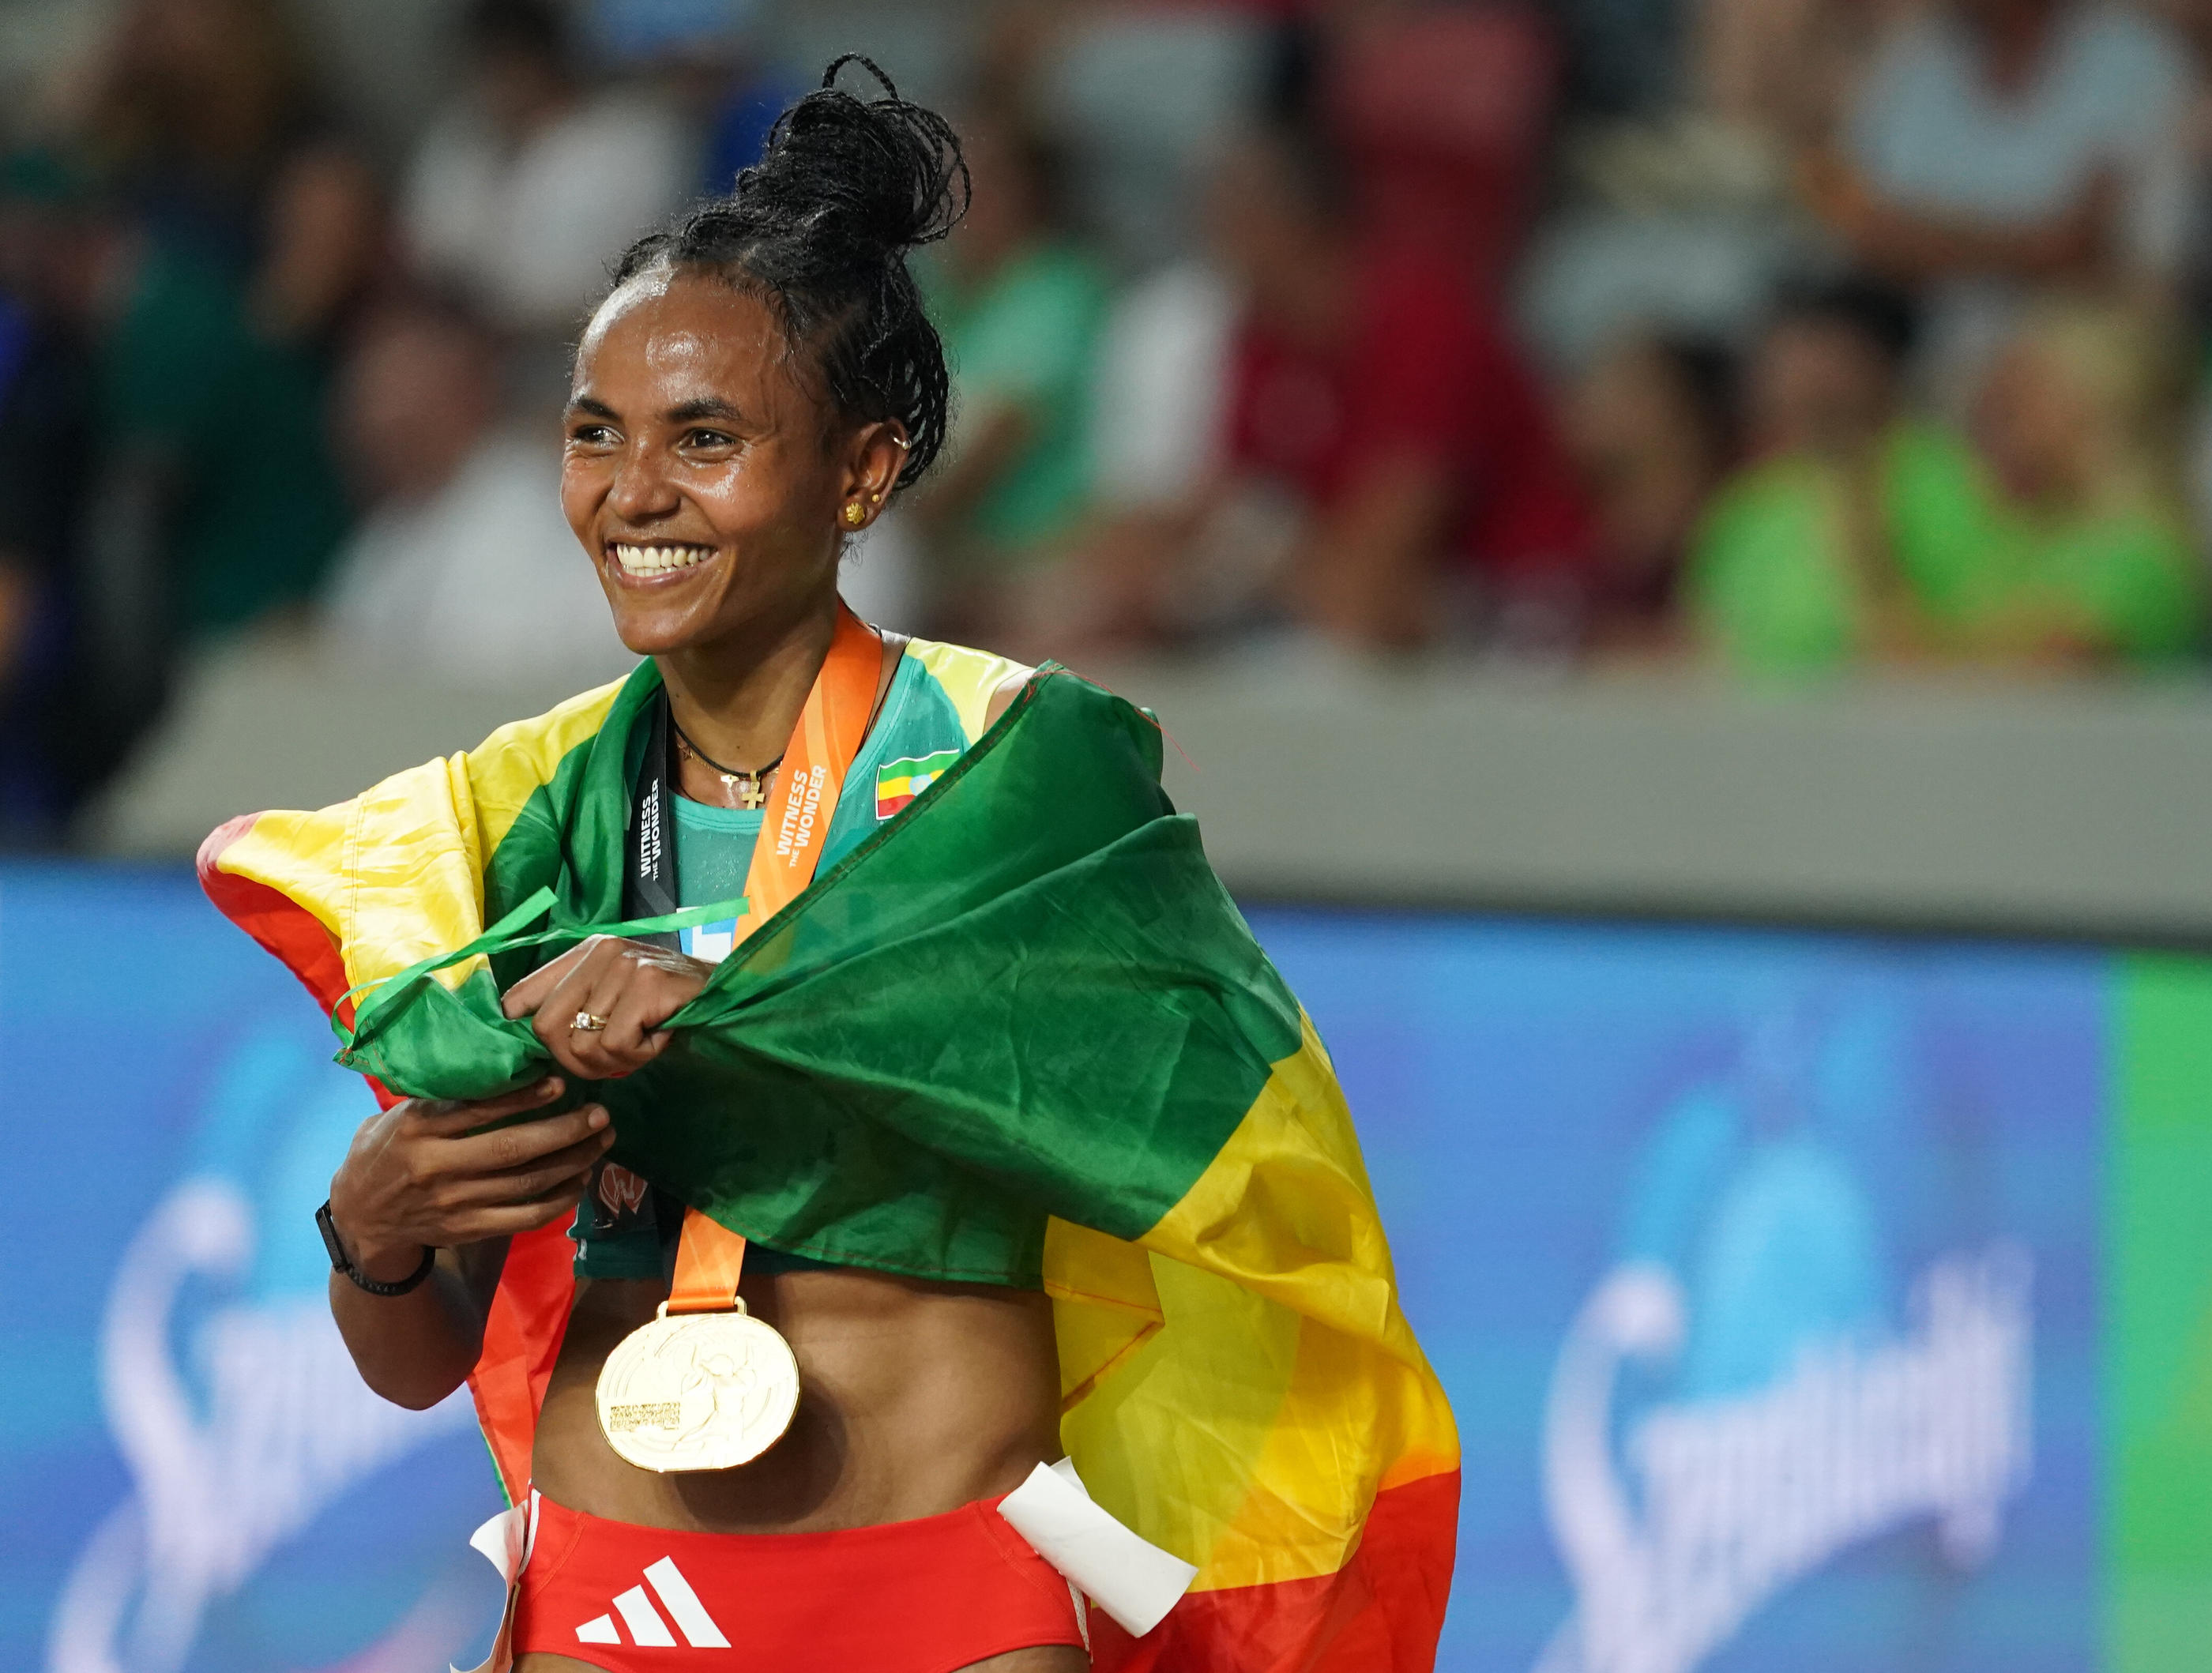 Le stade d'Antony va notamment accueillir les entraînements de l'équipe d'athlétisme d'Ethiopie, dont l'une des représentantes emblématique est la recordwoman du monde du 5 000 m, Gudaf Tsegay. Marcus Brandt/dpa - Photo by Icon sport